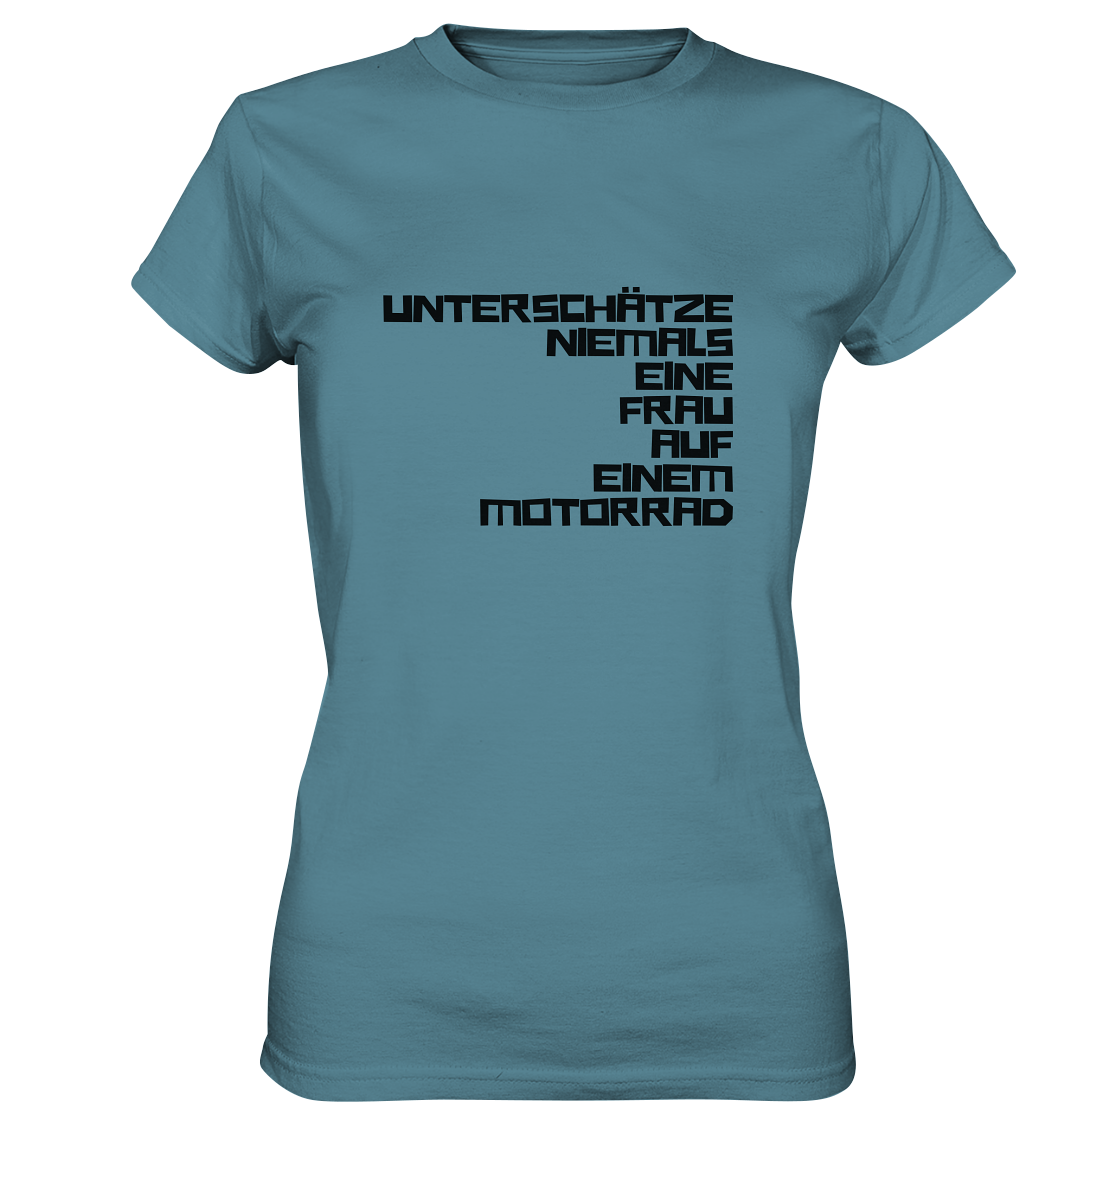 Damen-T-Shirt, Rundhals, mit Aufdruck "Unterschätze niemals eine Frau auf einem Motorrad", blau